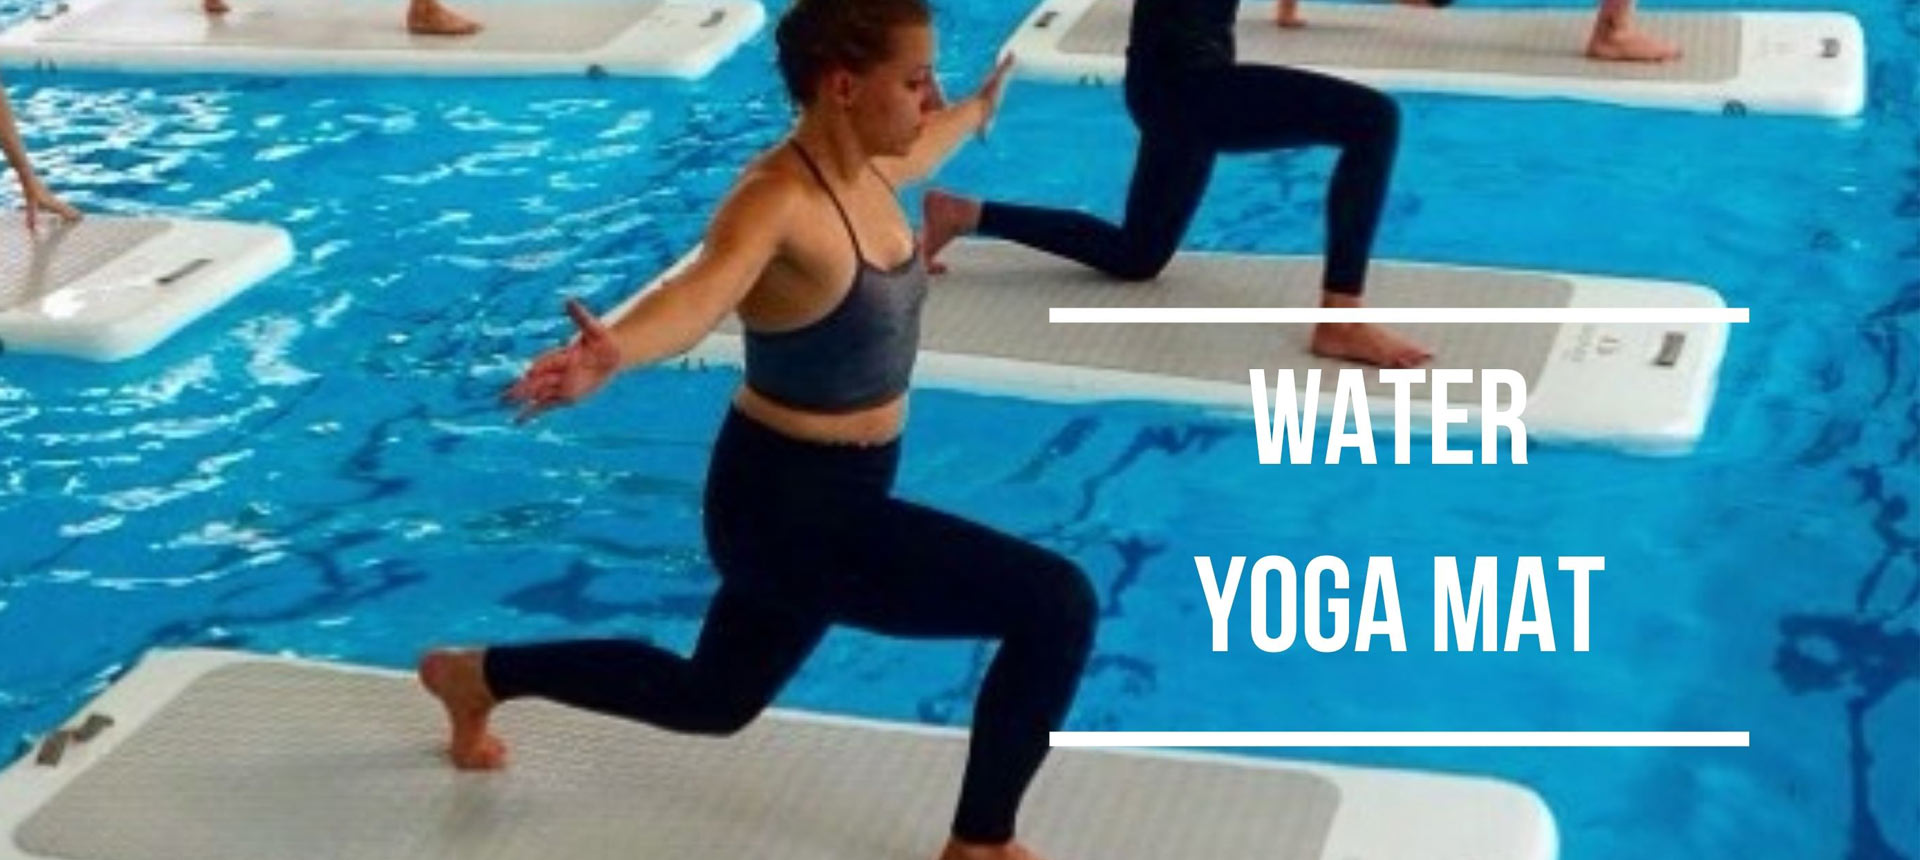 Water Yoga Mat